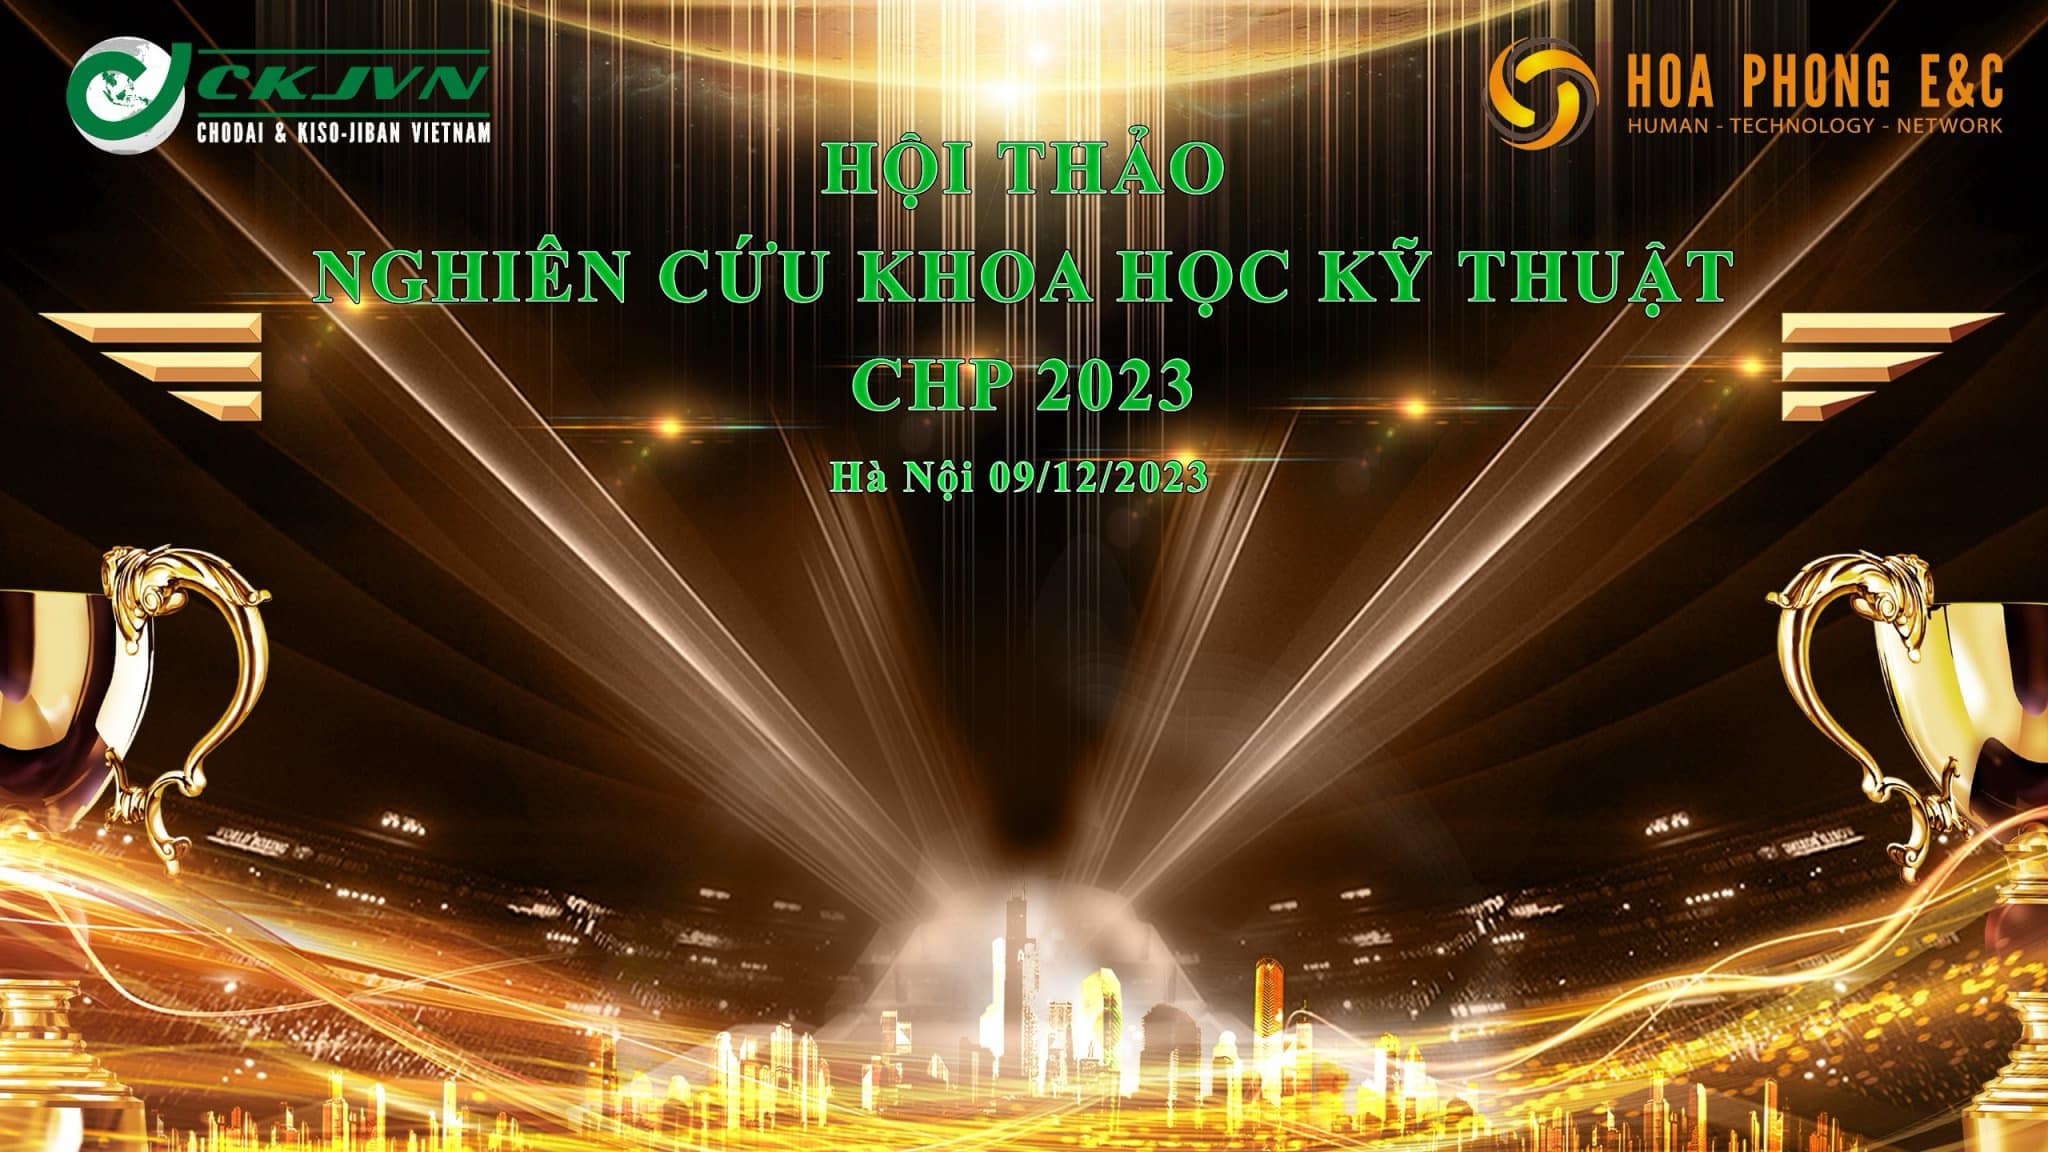 CKJVN & HPEC ĐỒNG TỔ CHỨC NGÀY HỘI THẢO NGHIÊN CỨU KHOA HỌC KỸ THUẬT CHP 2023